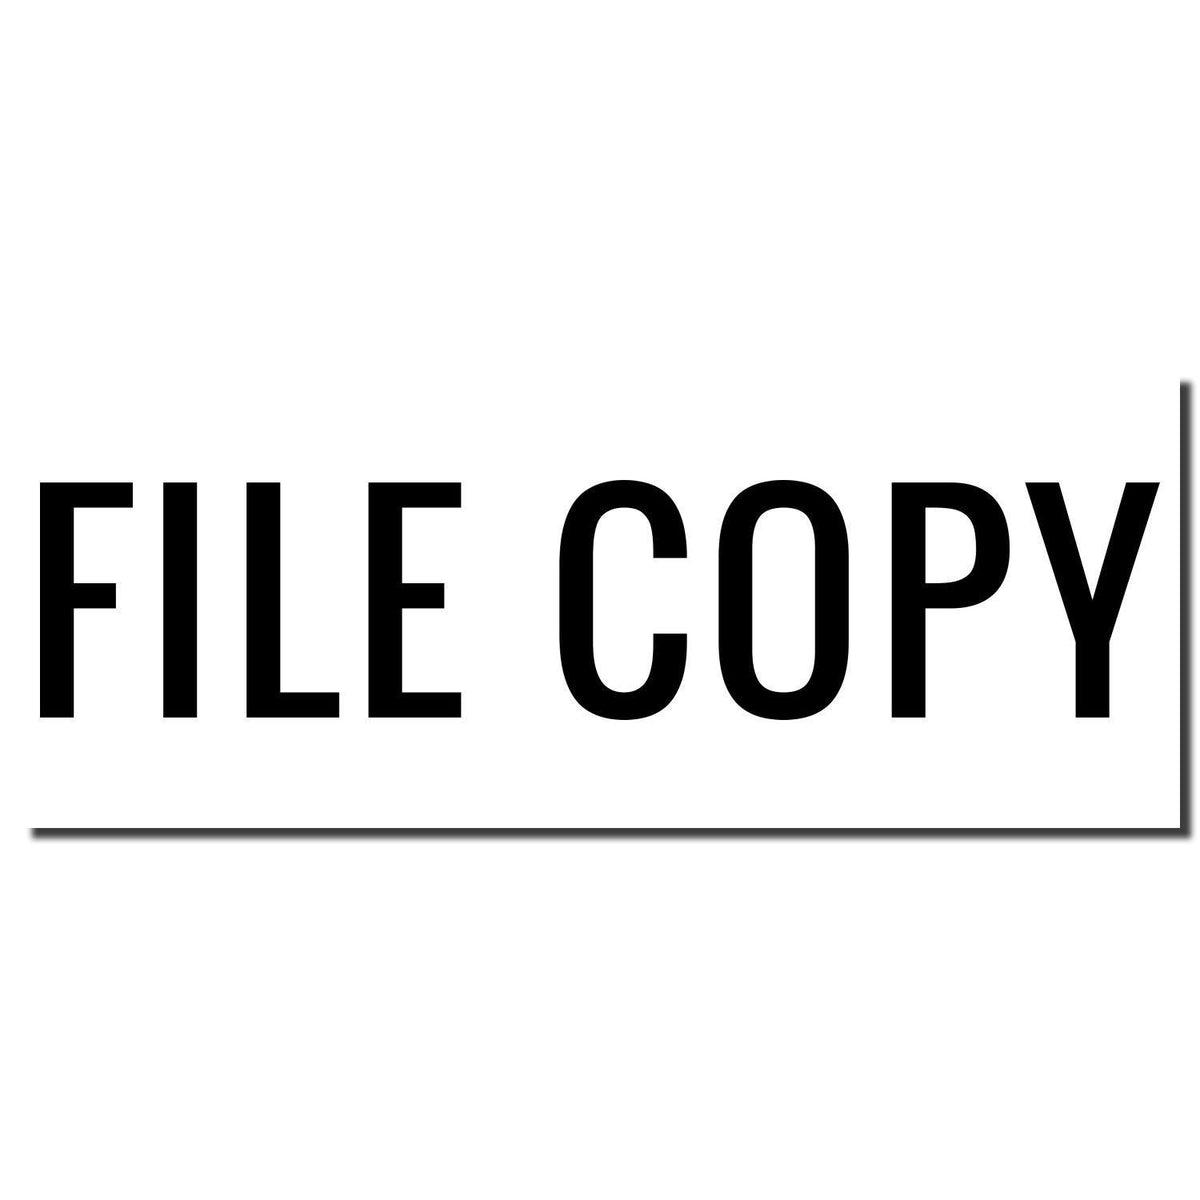 Enlarged Imprint Large Narrow Font File Copy Rubber Stamp Sample